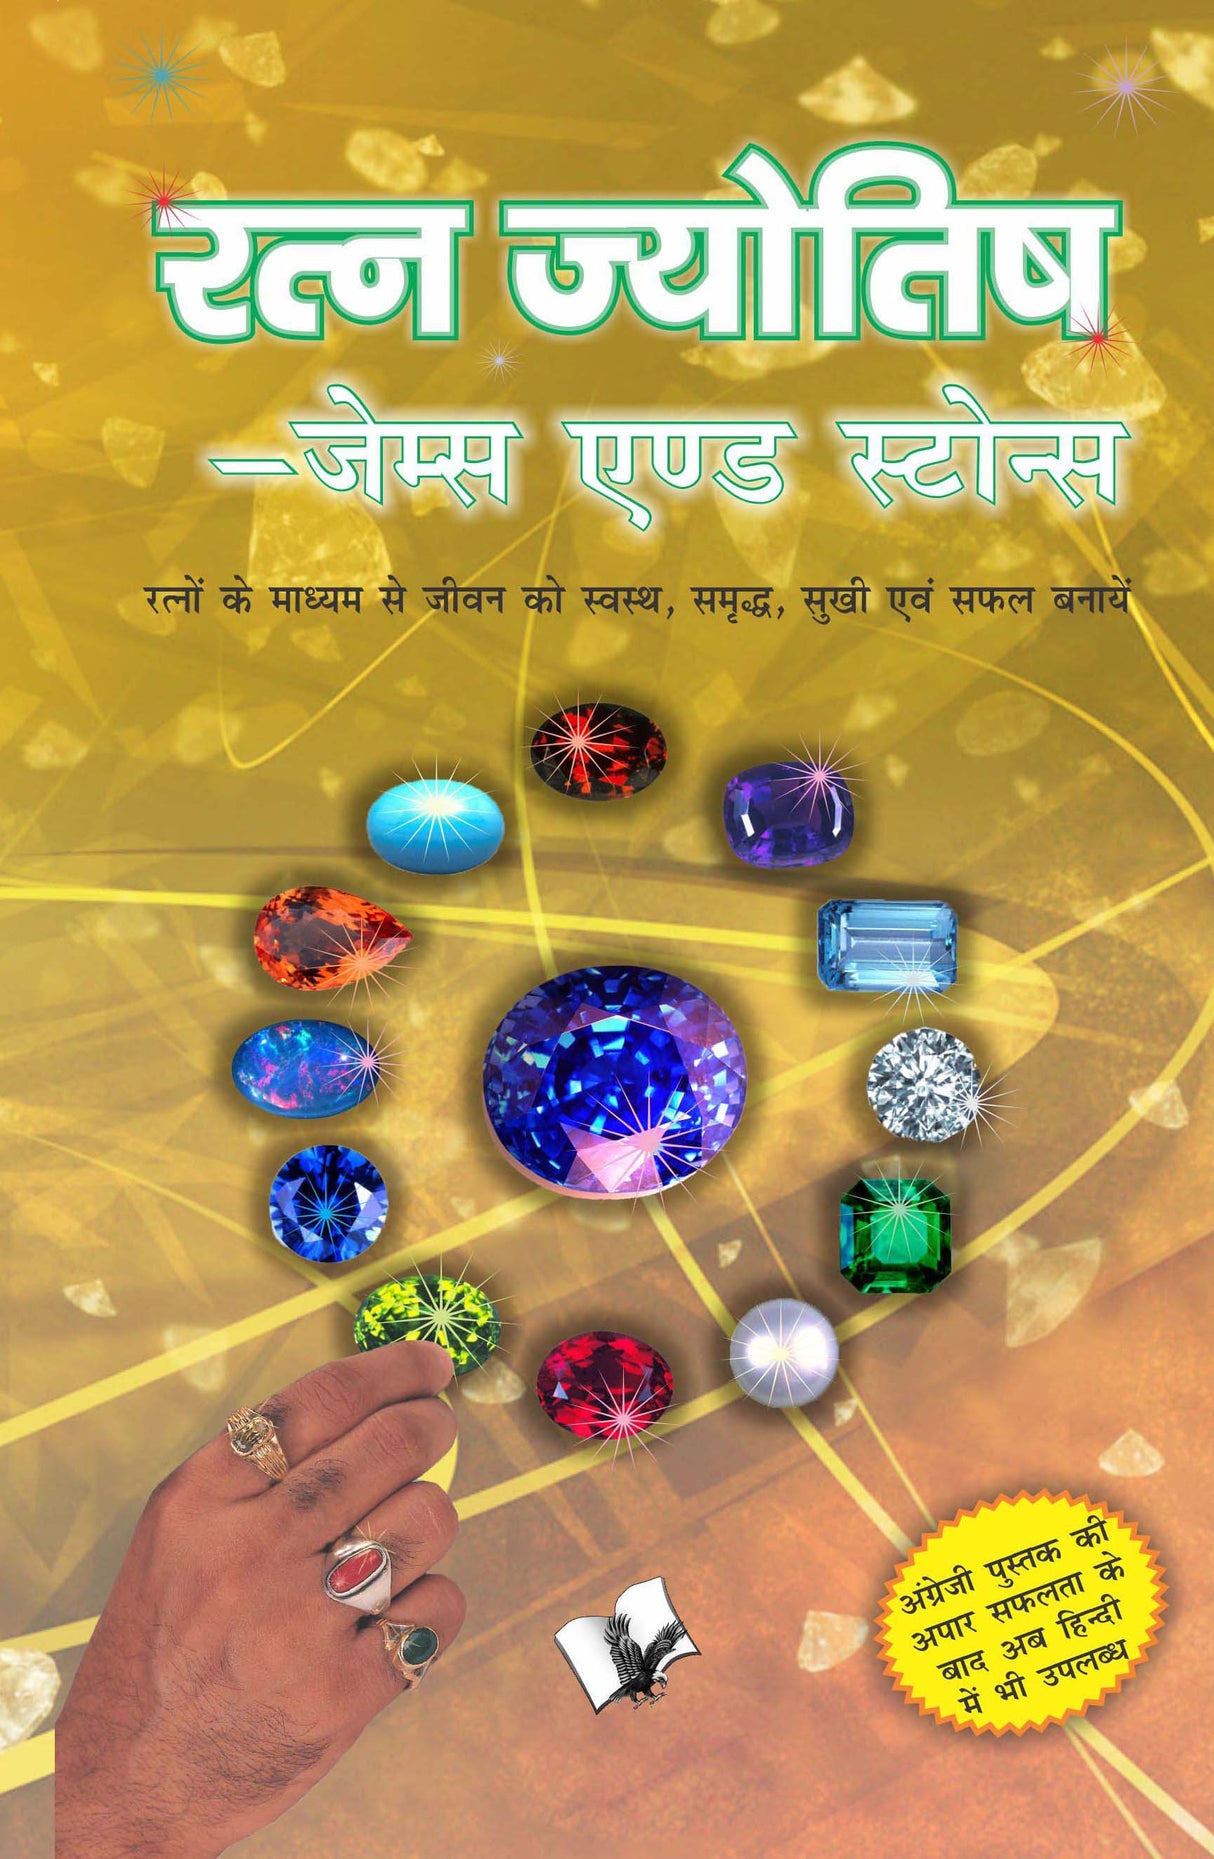 Ratna Jyotish - Gems and Stones: Pareeksha dabaav se ubarane ke sunahare tips